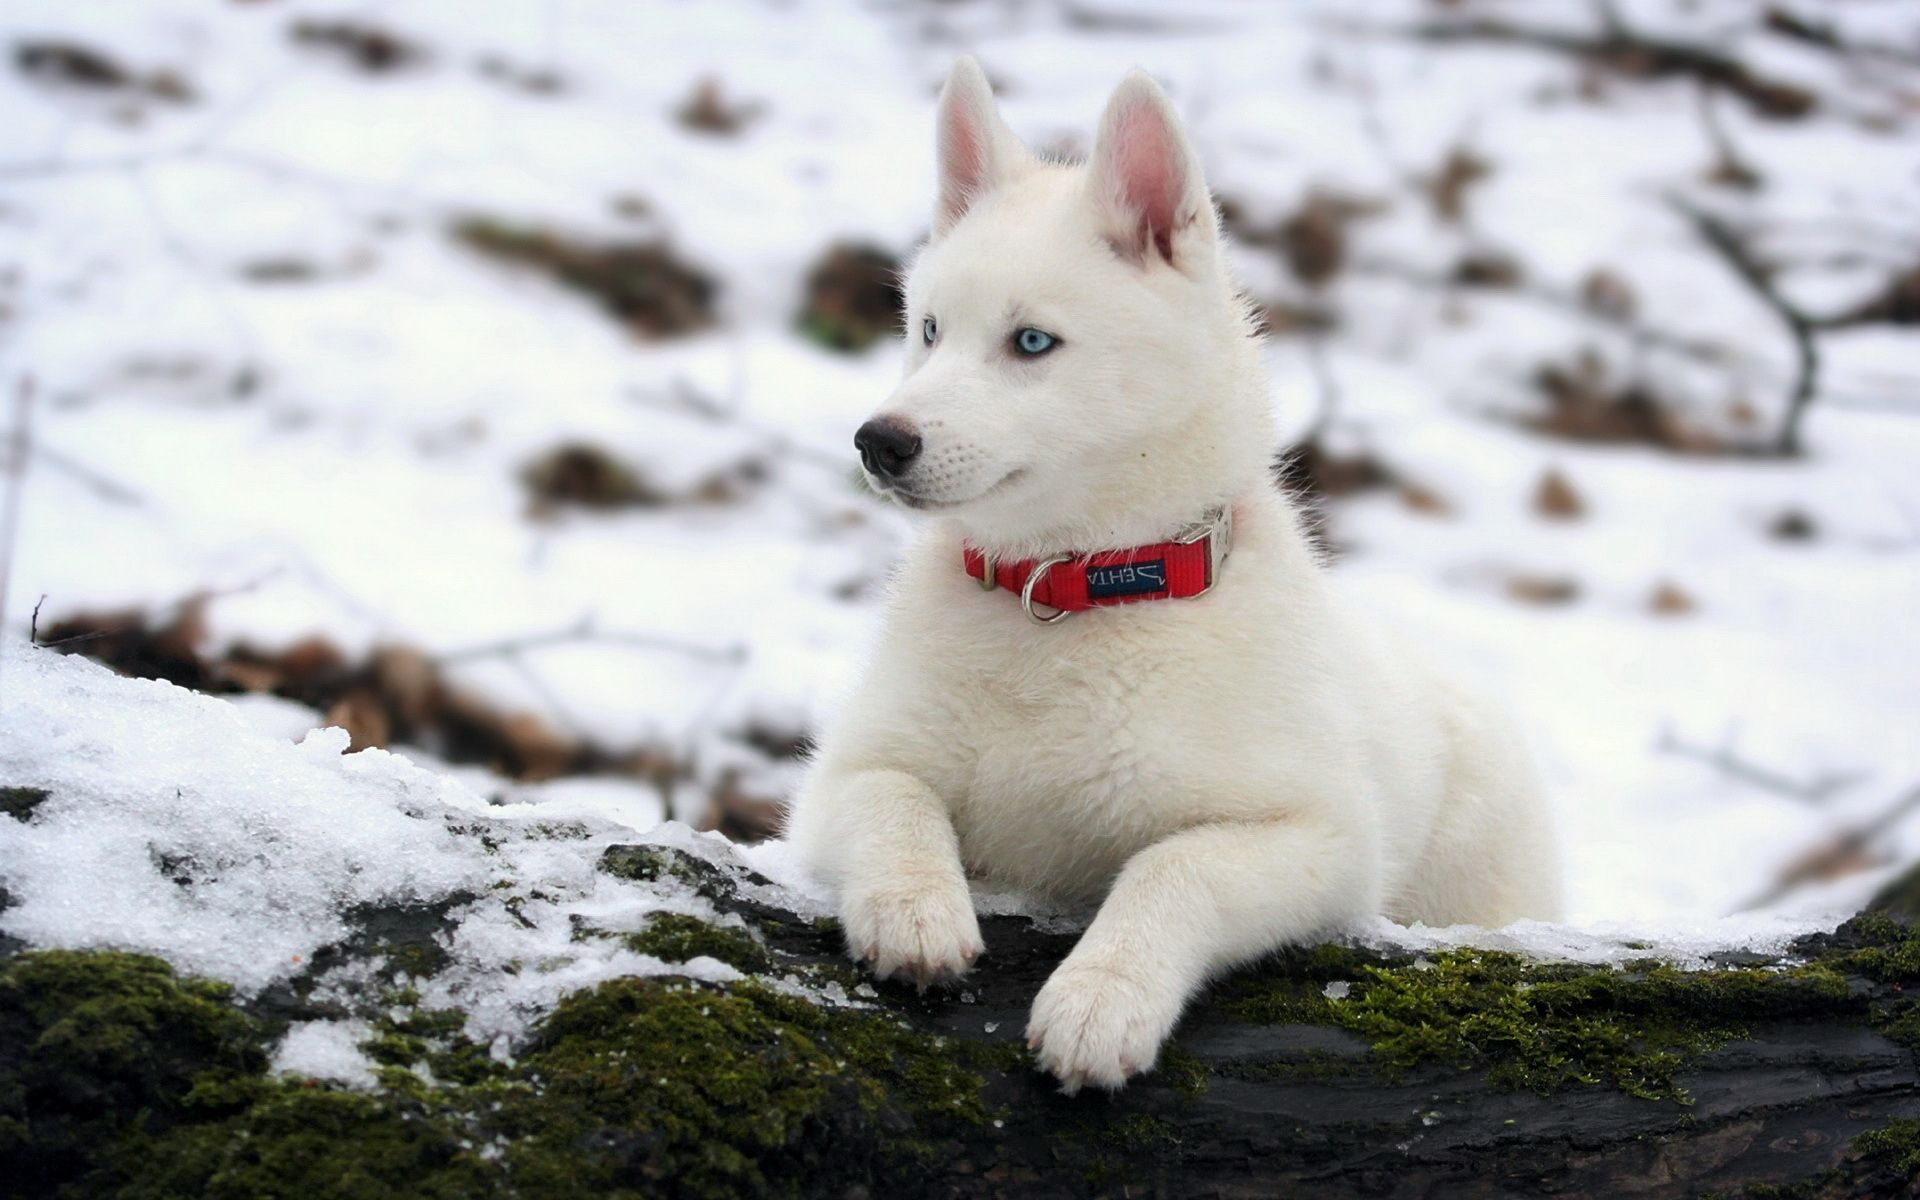 عکس شگفت انگیز و زیبا از سگ هاسکی سفید با قلاده قرمز